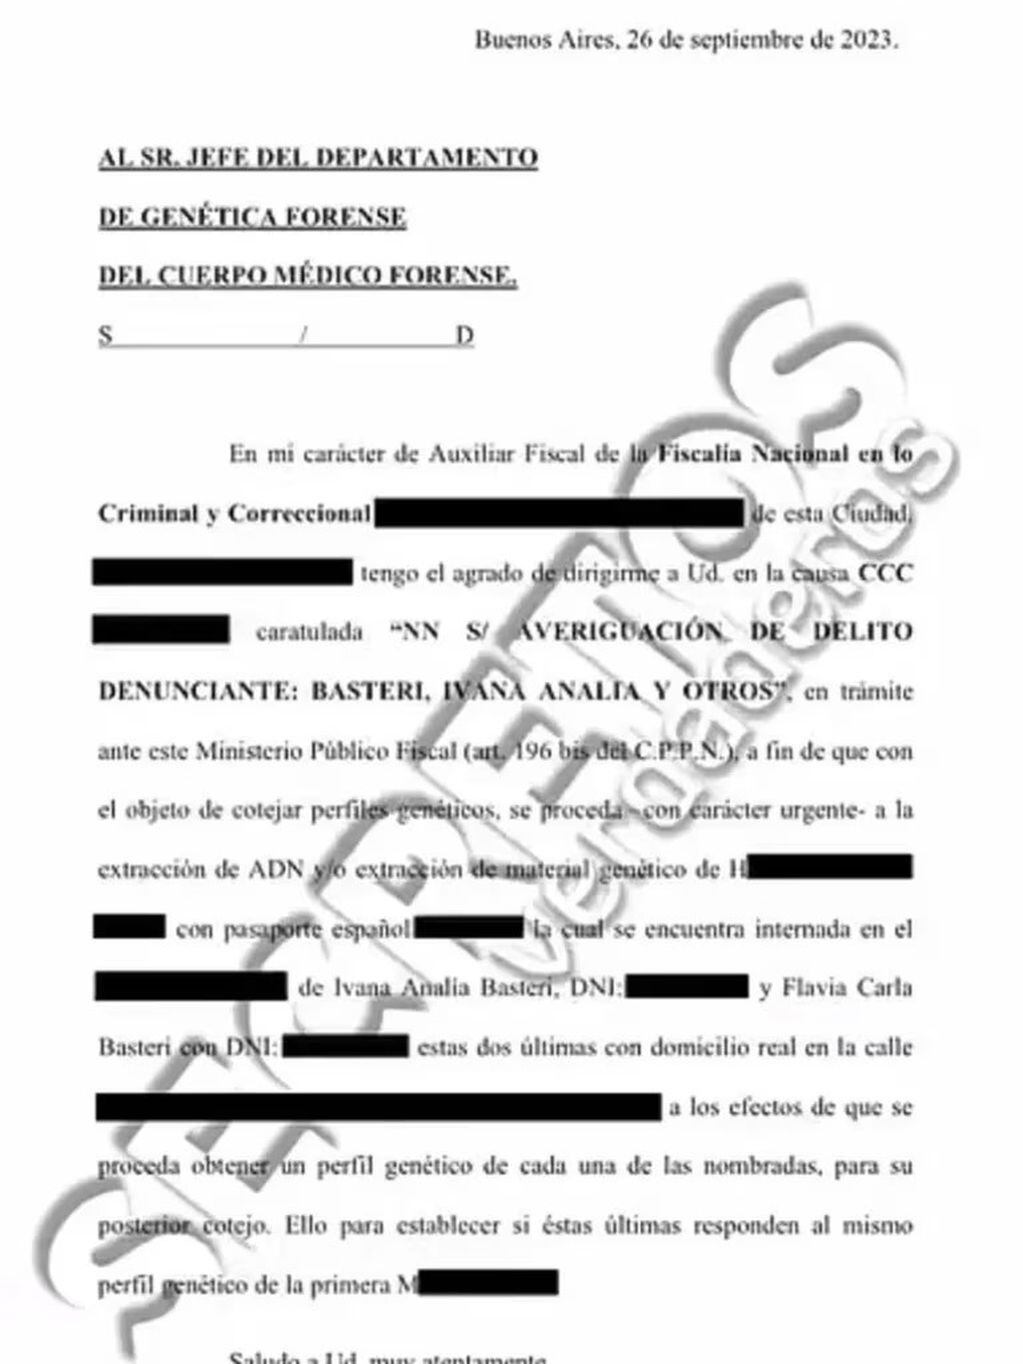 El documento que presentó Luis Ventura en su programa que autoriza el análisis de ADN.